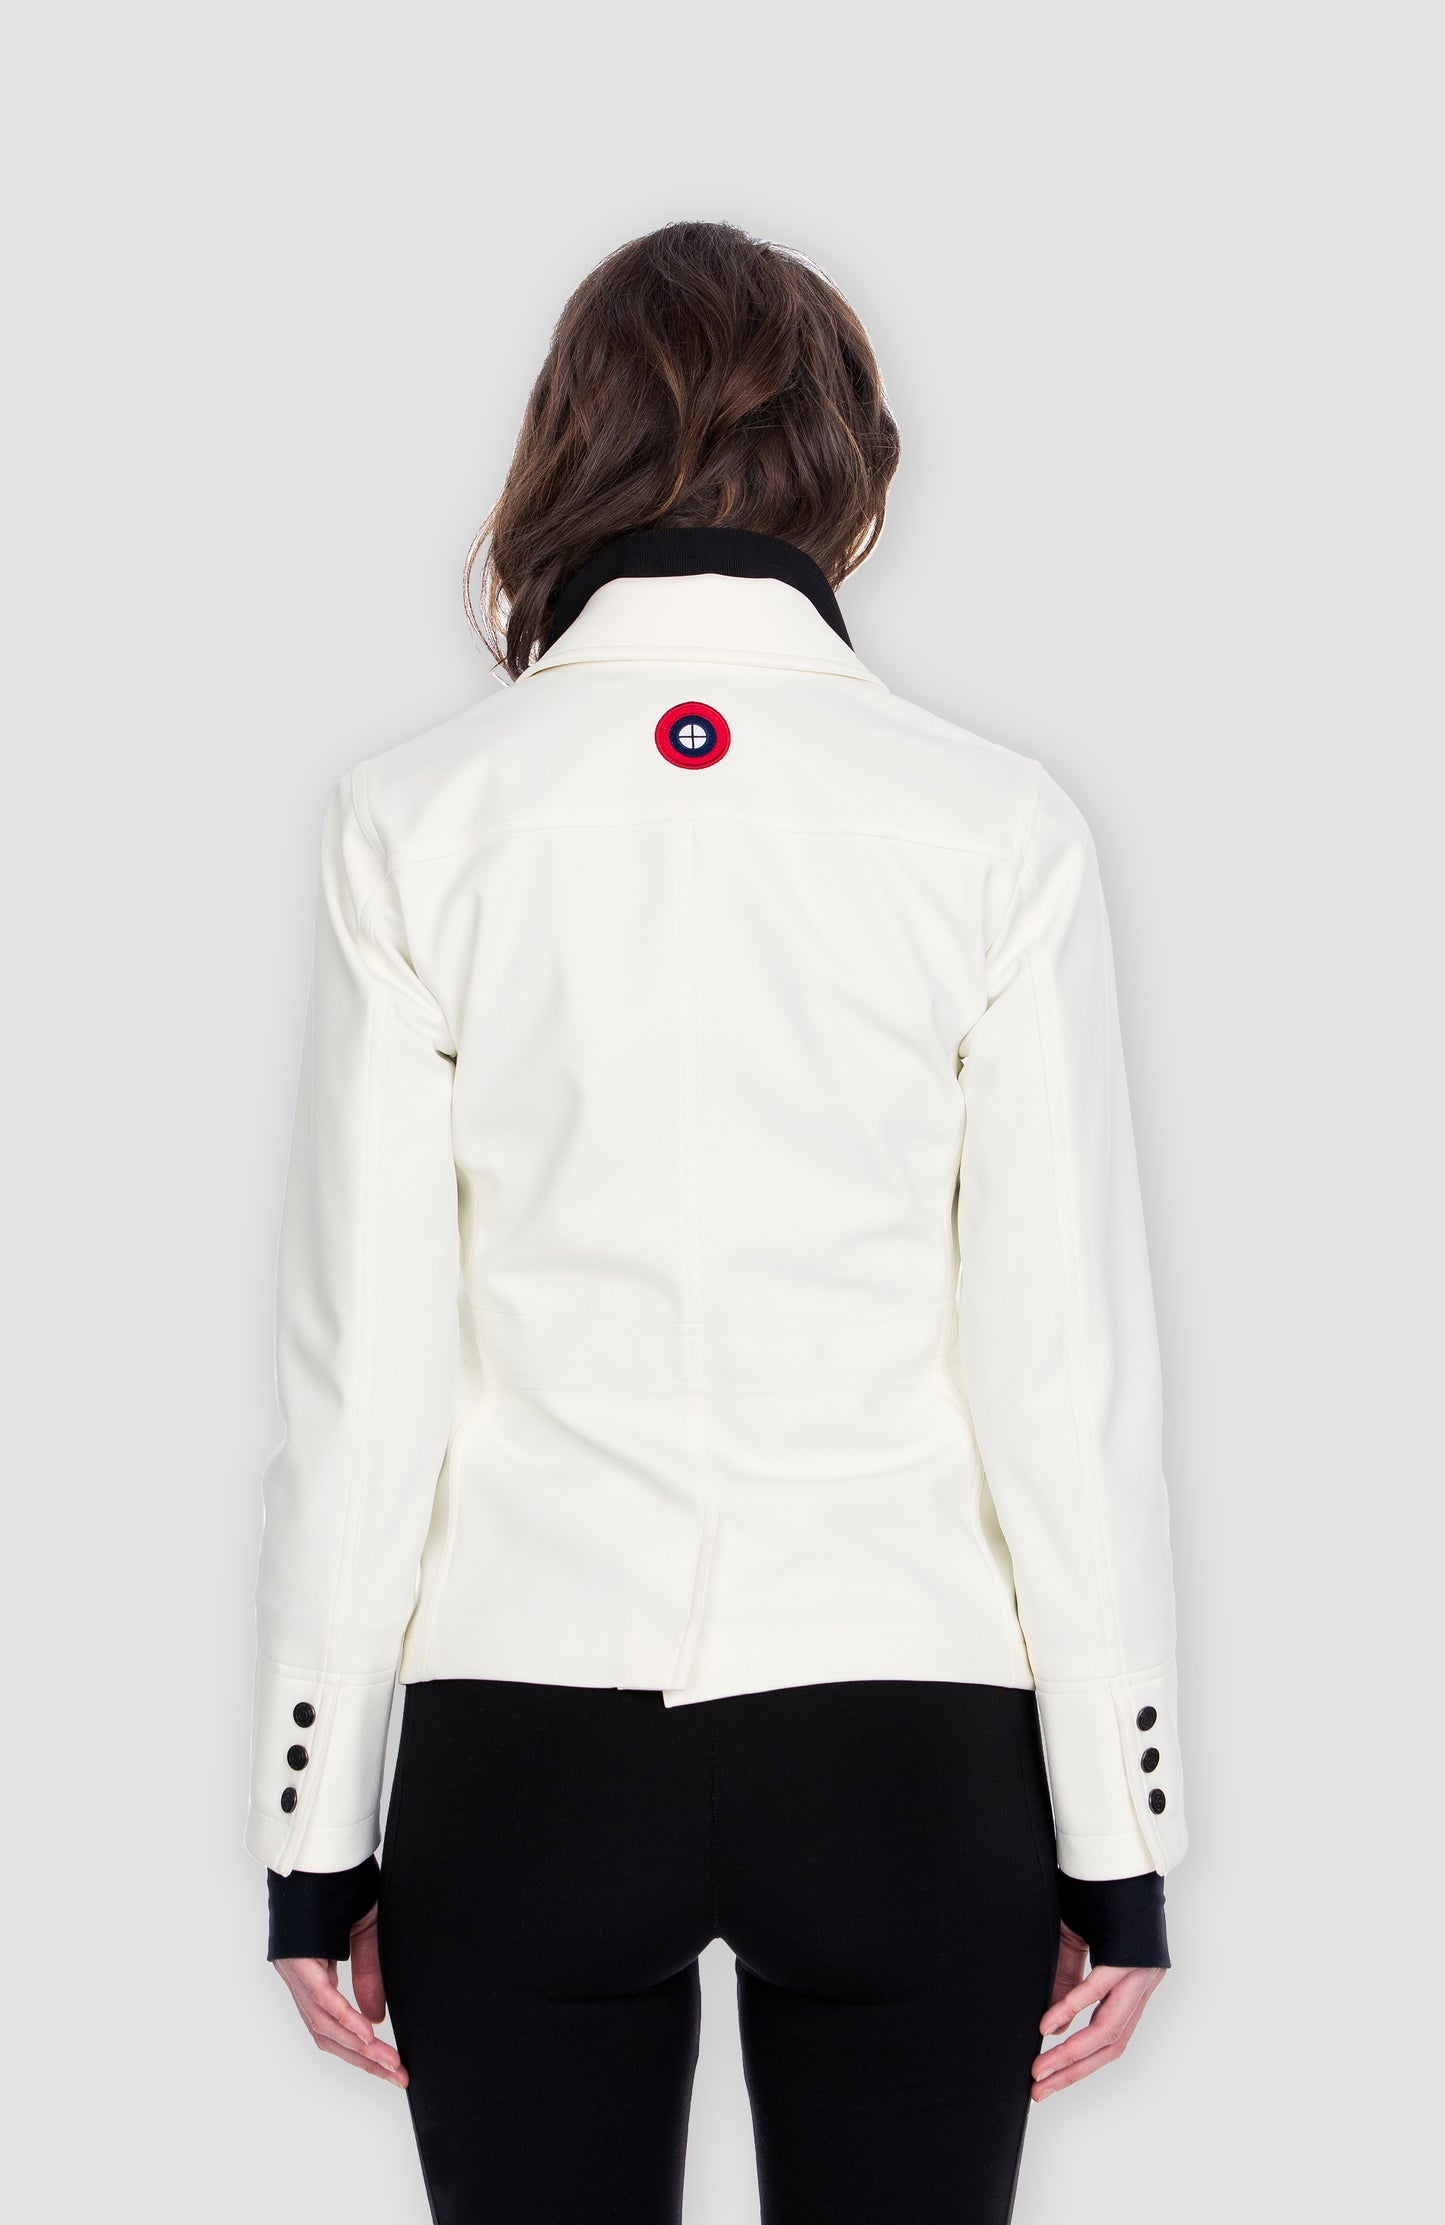 Women's Jacket (White)